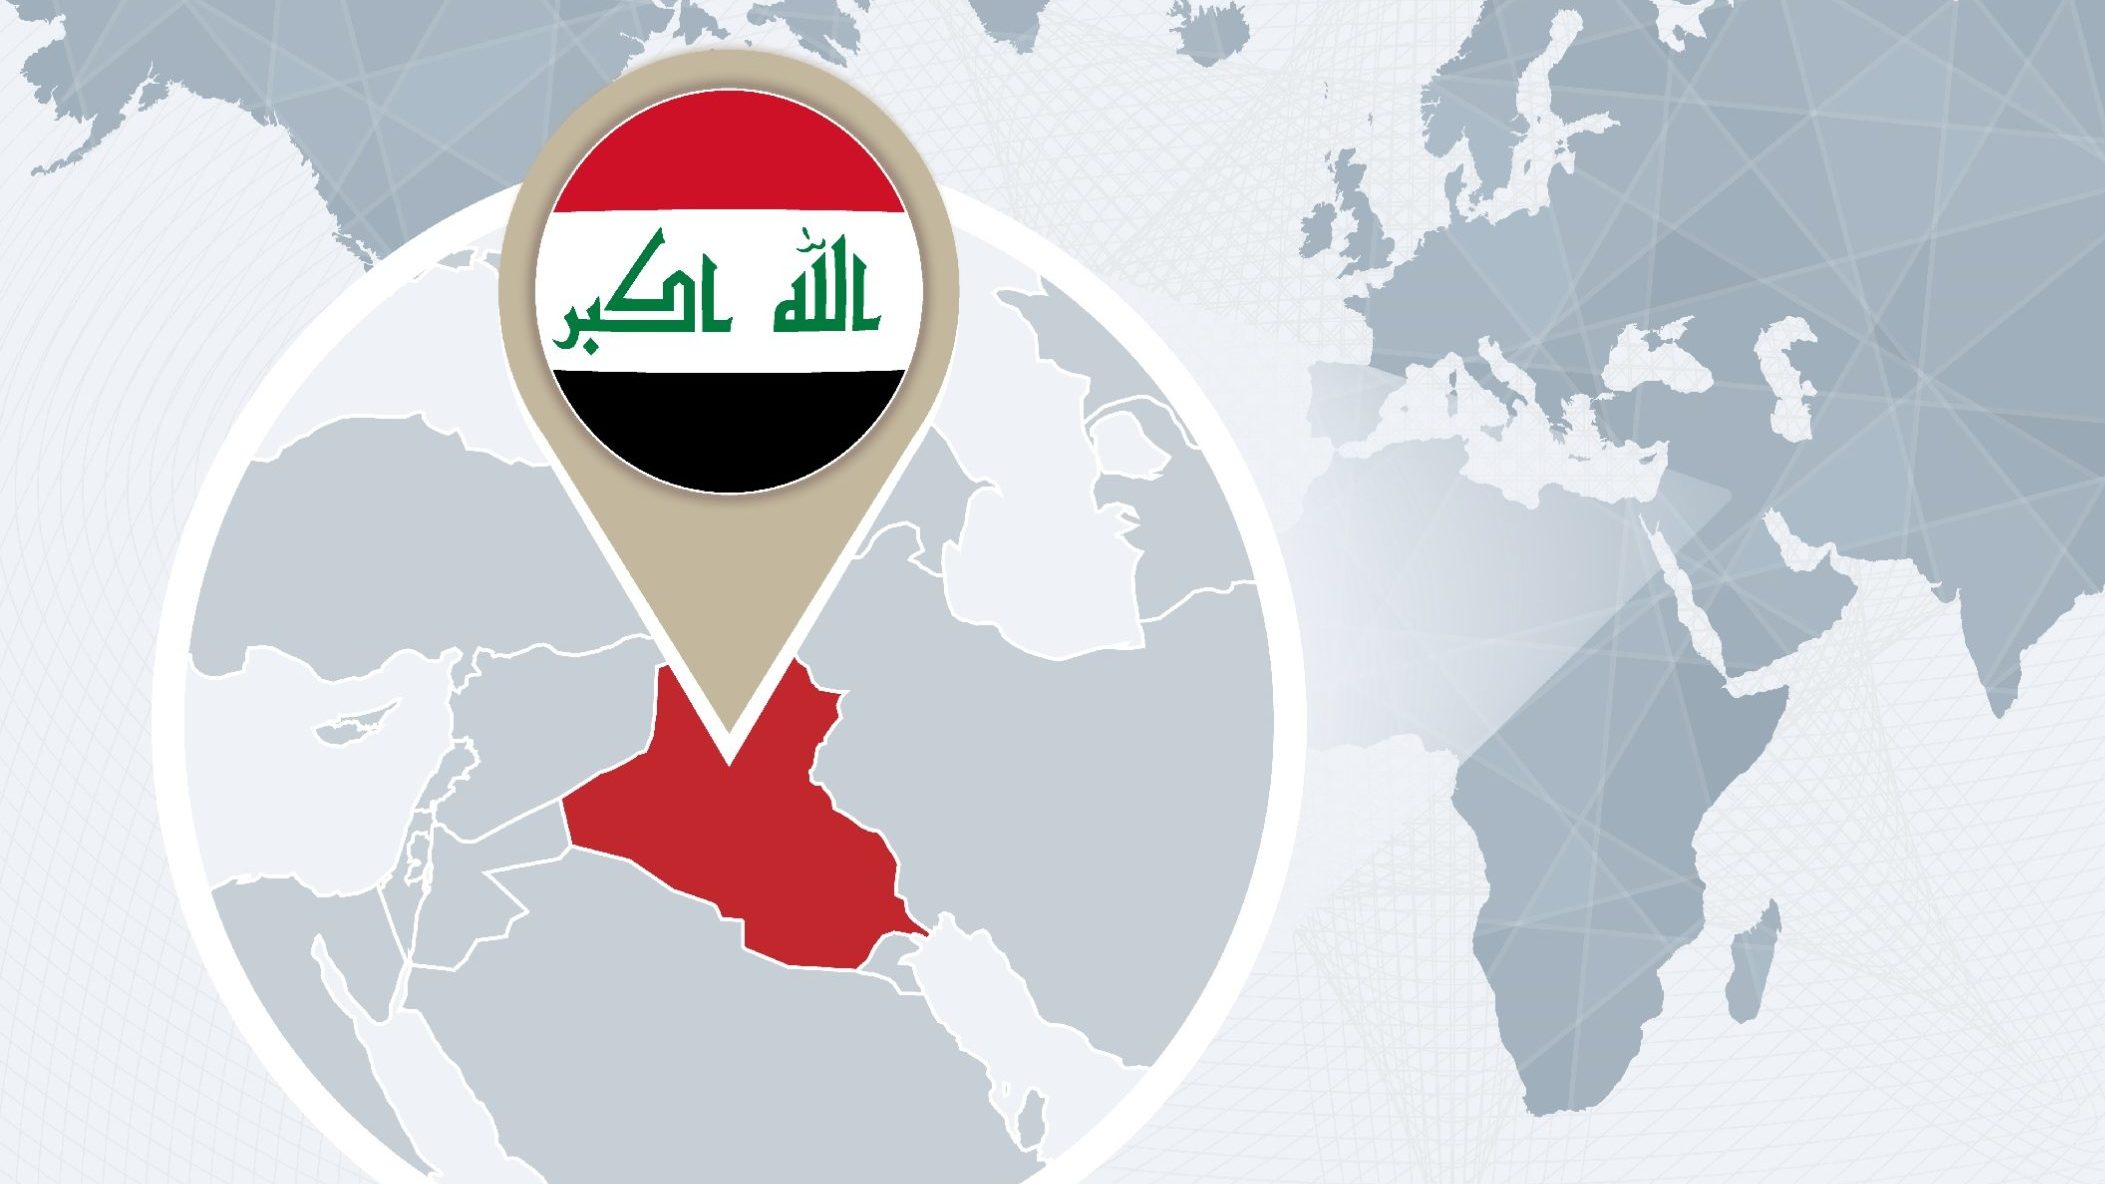 Iraq: Islamic State Kills 6, Injures 5